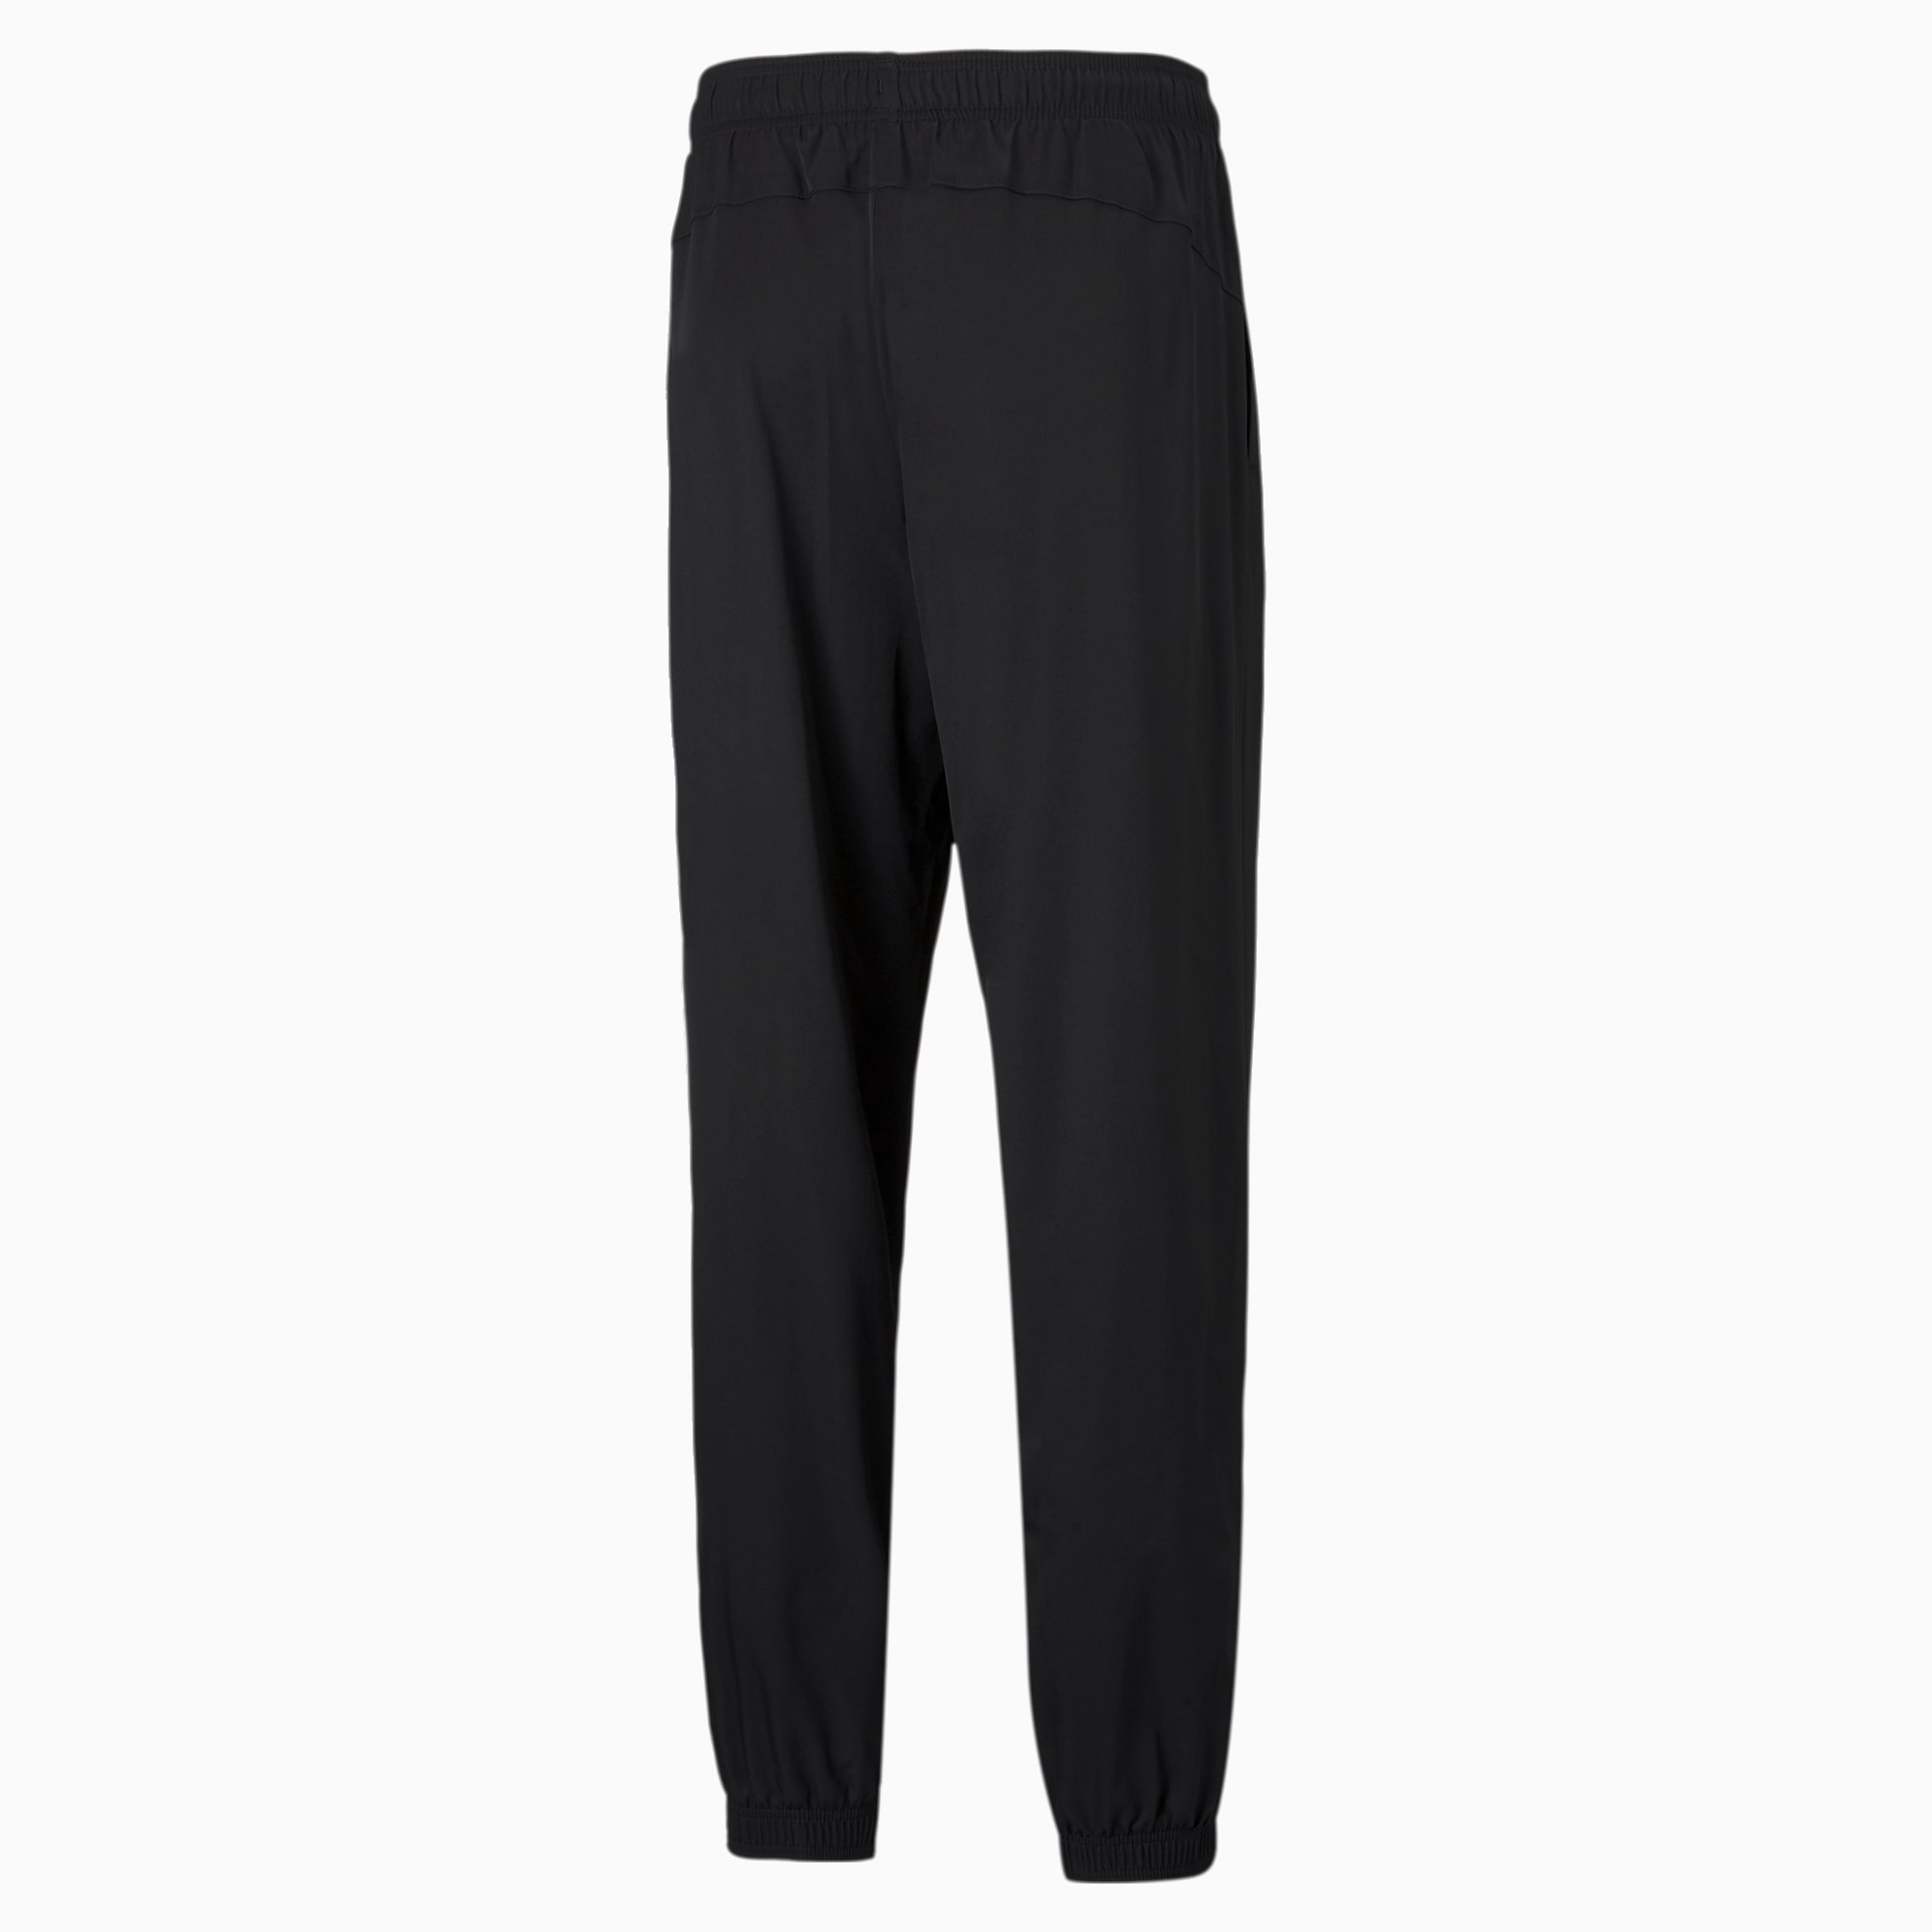 PUMA Active Woven Men's Pants, Black, Size XXS, Clothing